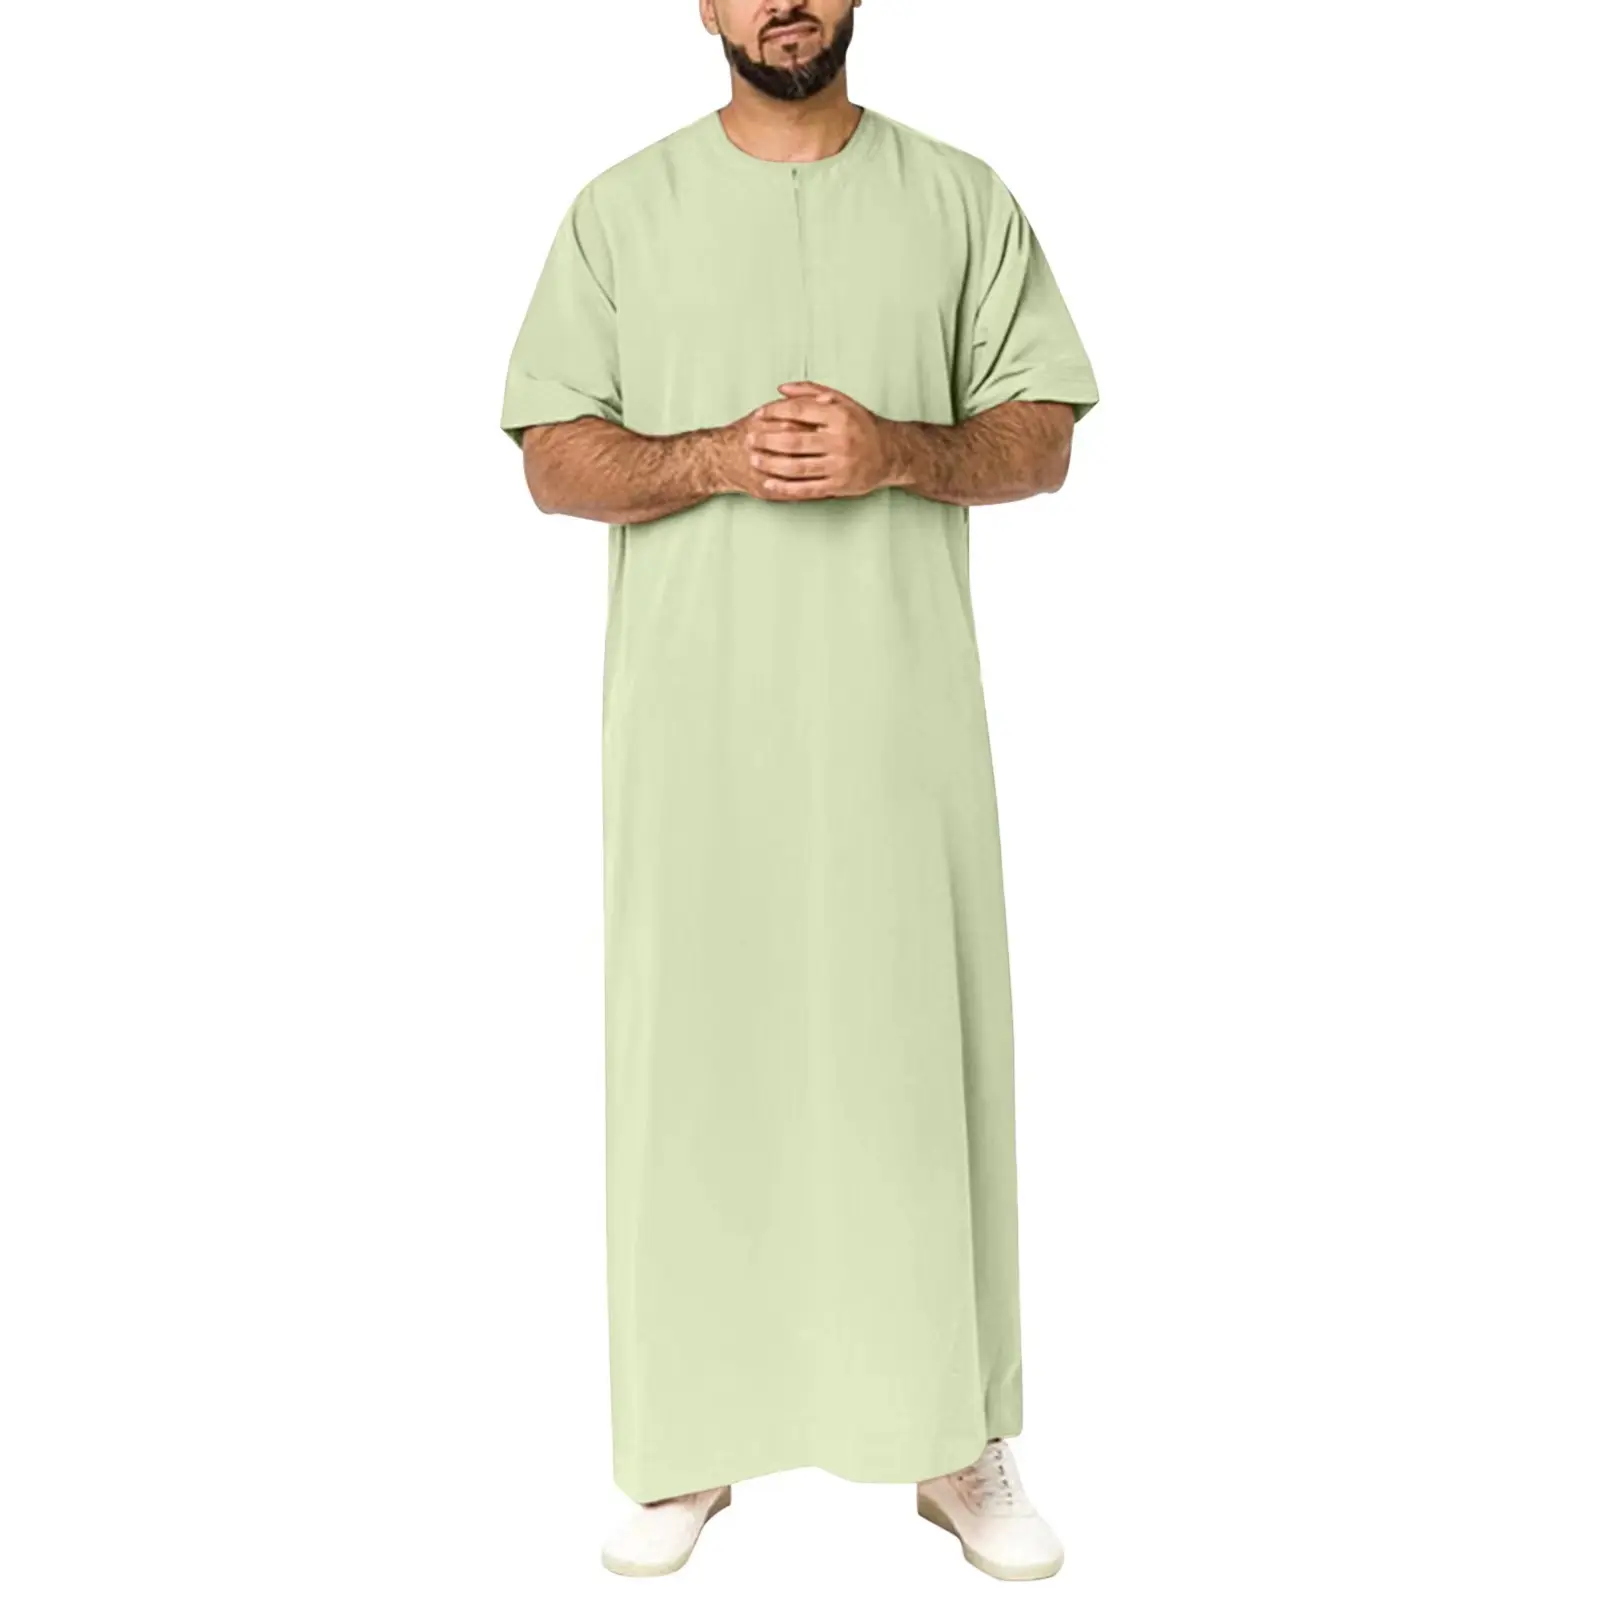 OEM Vêtements islamiques arabes de Dubaï Thobe ethnique à manches courtes pour hommes Thobes Thobe musulman de couleur unie pour hommes